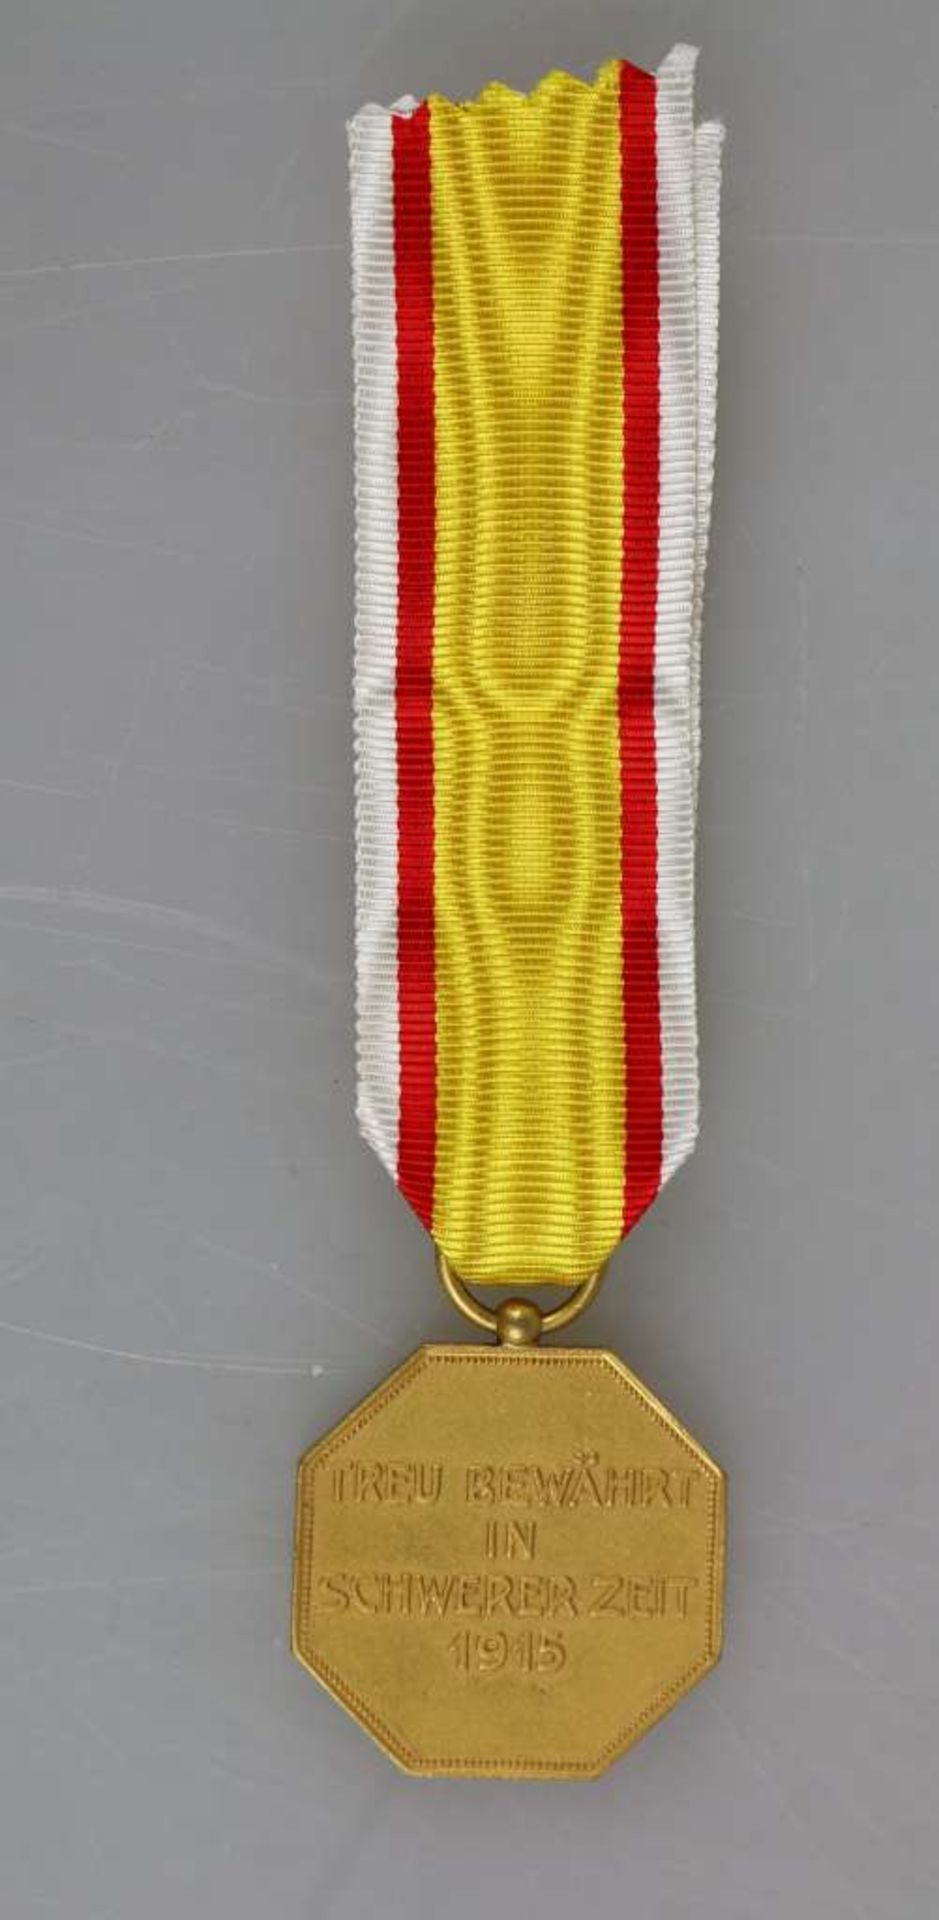 Lippe-Detmold, Kriegs-Ehrenmedaille am Band für Verdienst im Feindesland, Buntmetall vergoldet, - Bild 2 aus 2